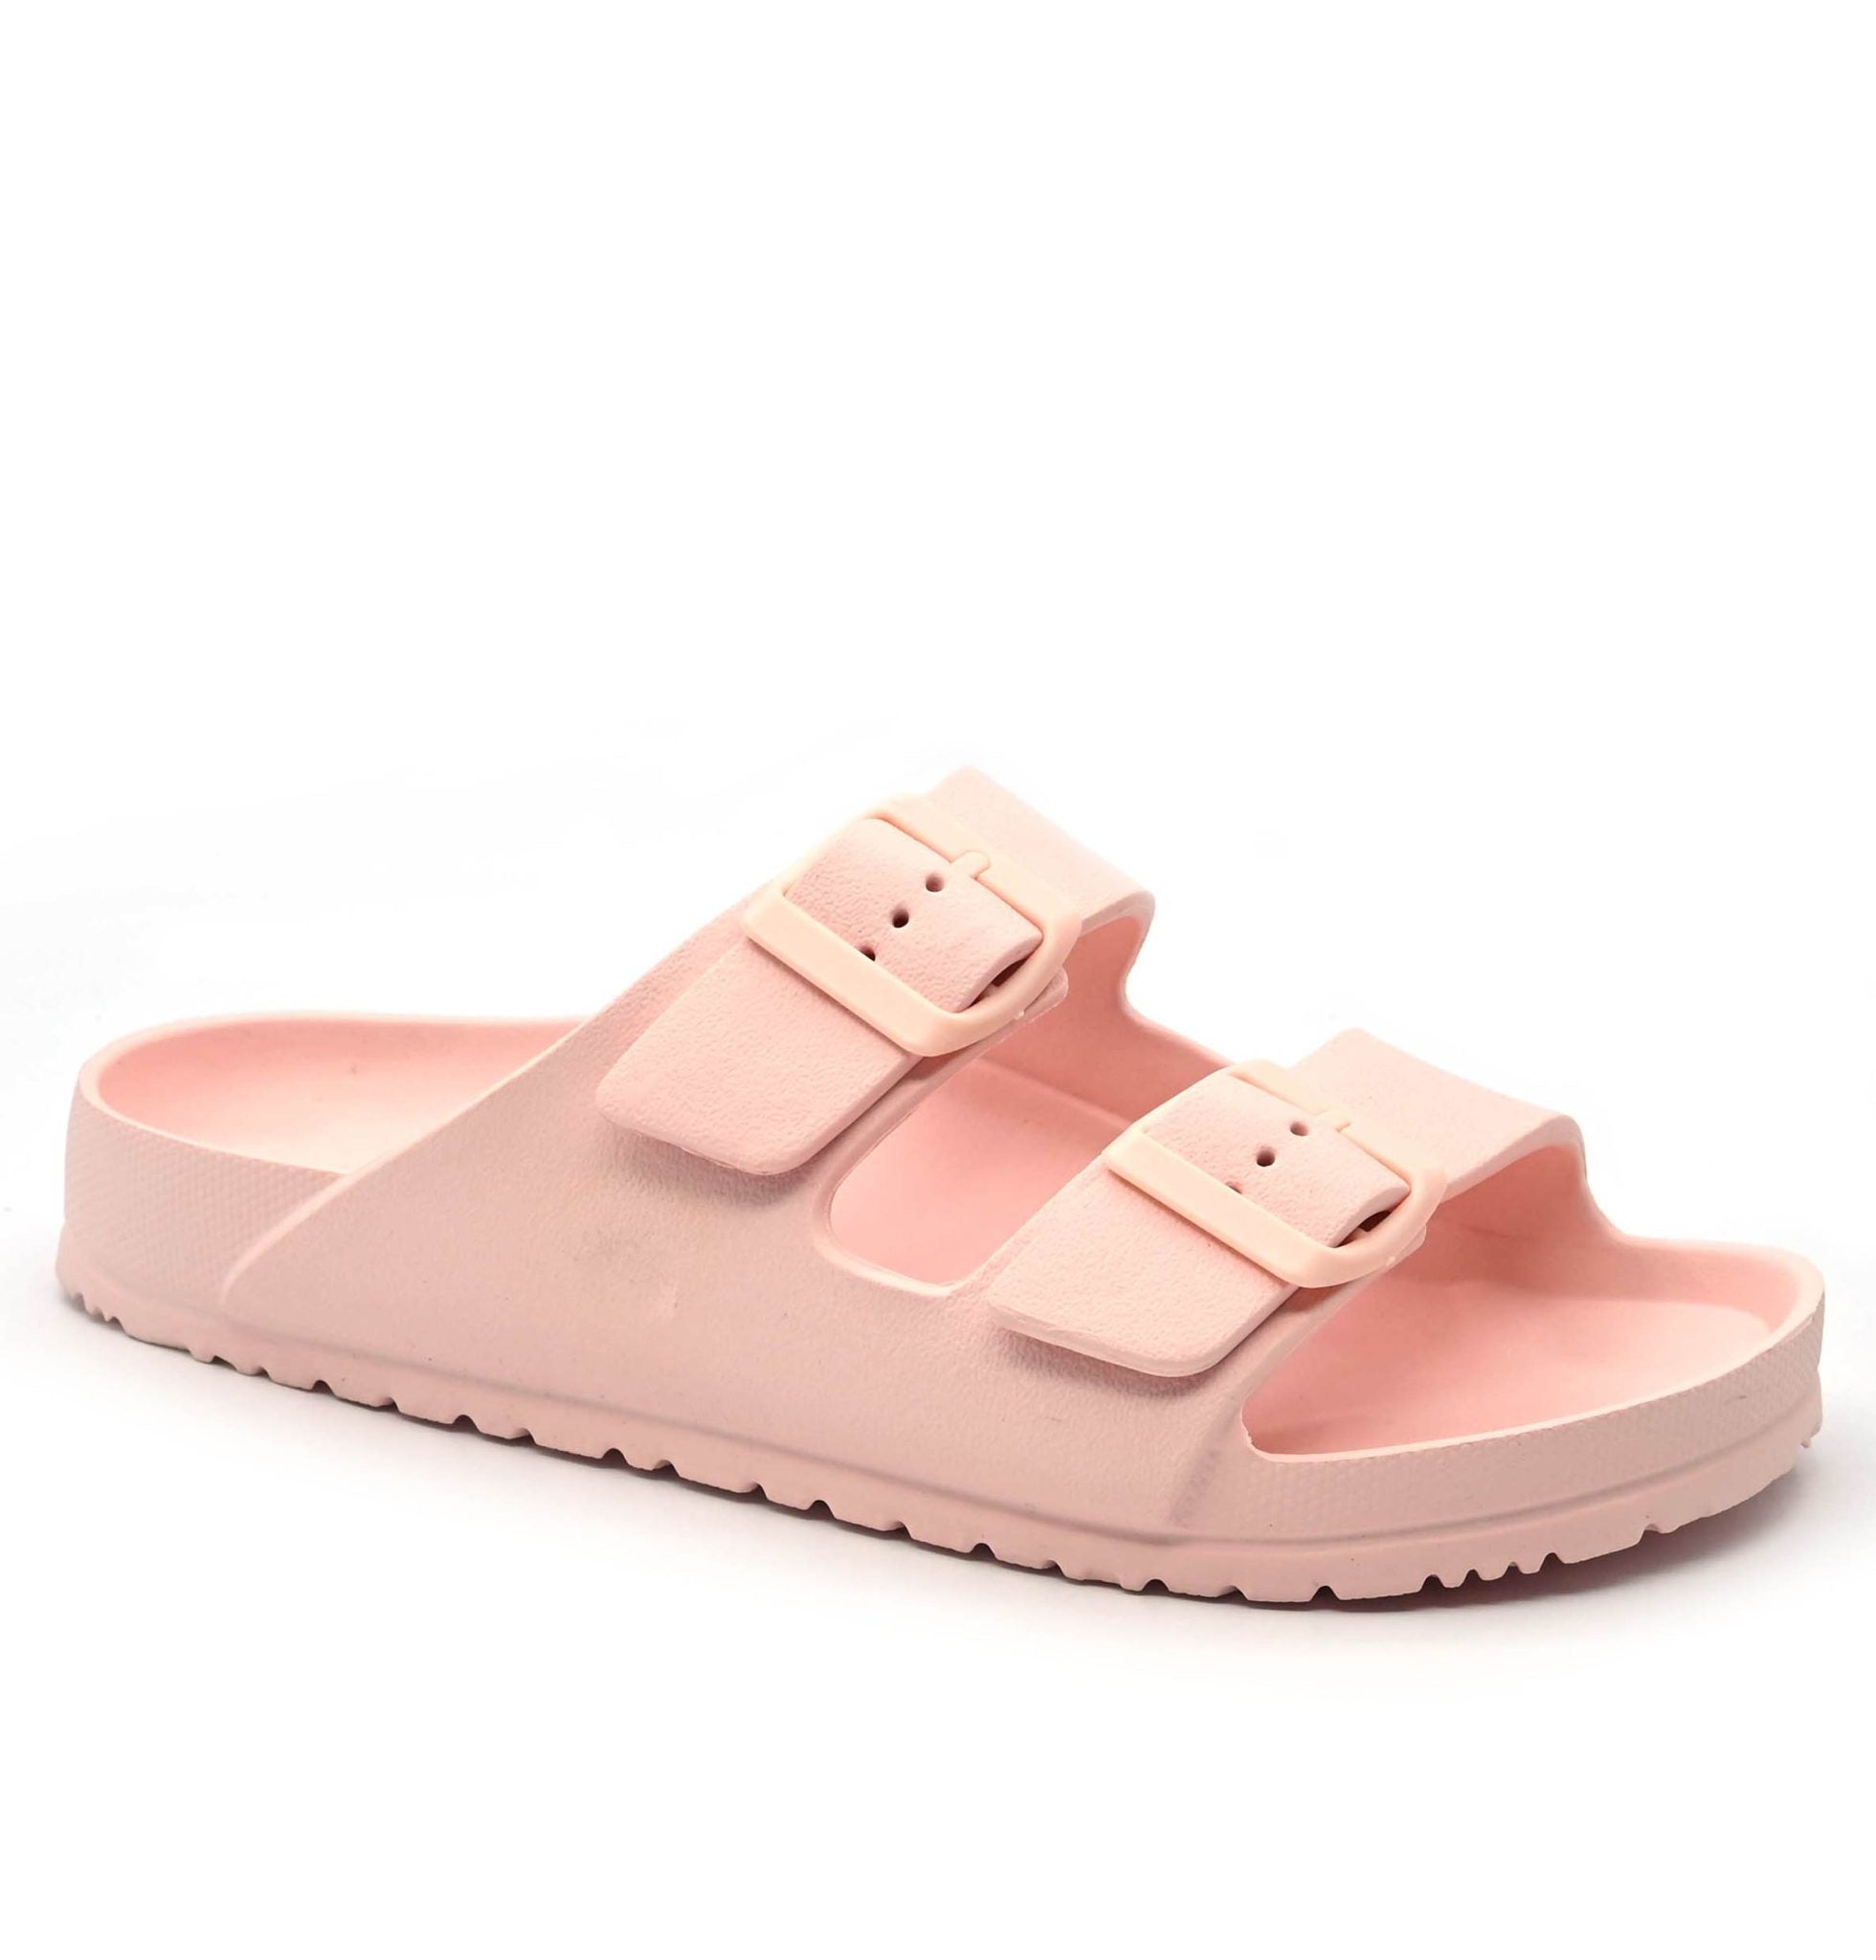 Pink Shell Sandals - bestacaiberryselect